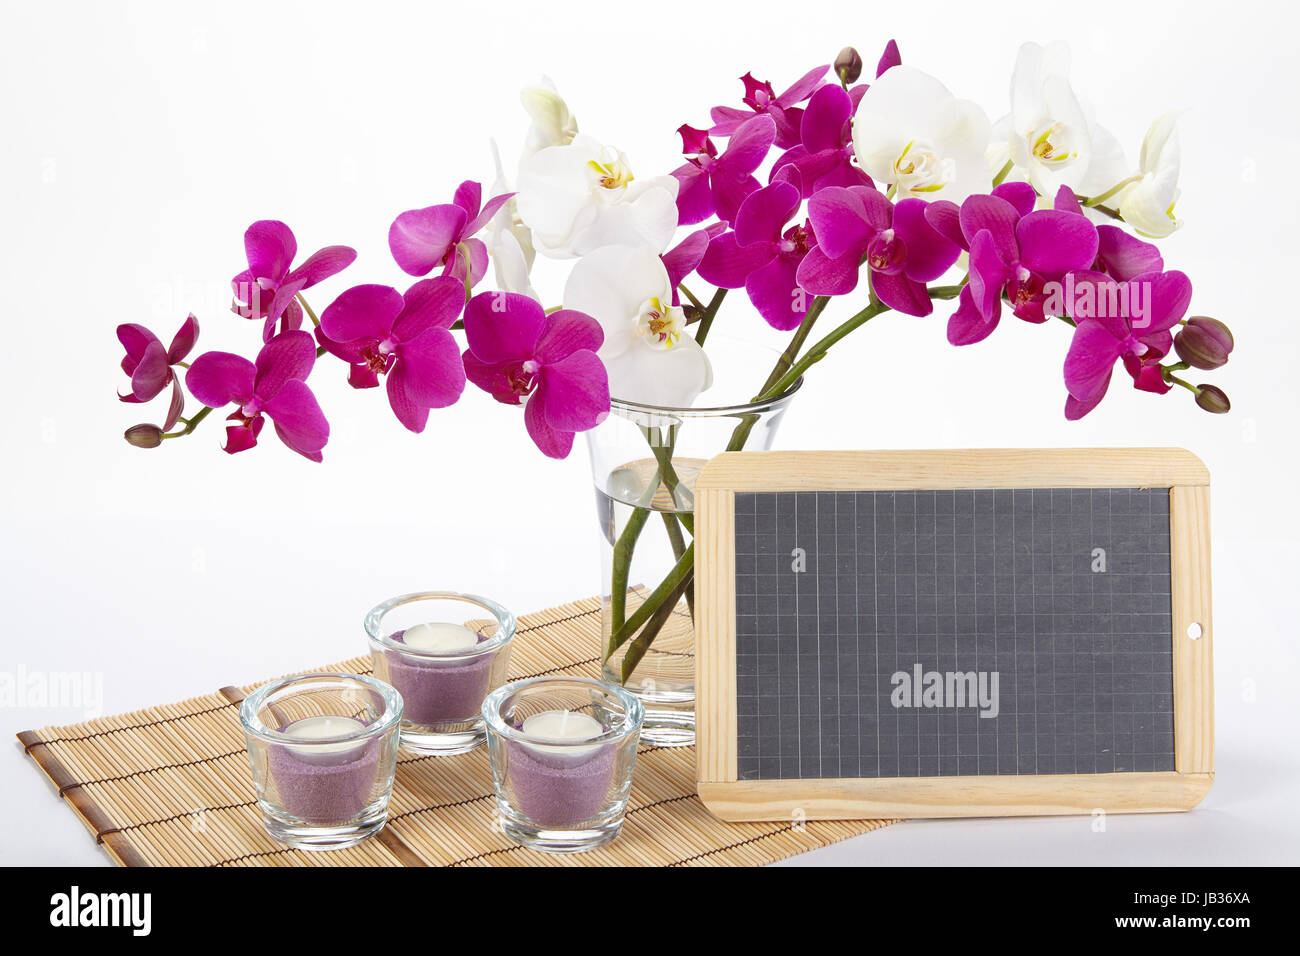 Ein Bouquet von weißen und lila Orchideen in einer Vase auf einem Tischset aus Bambus steht. Ein wenig Schiefer kann als ein freies Textfeld verwendet werden. Stockfoto